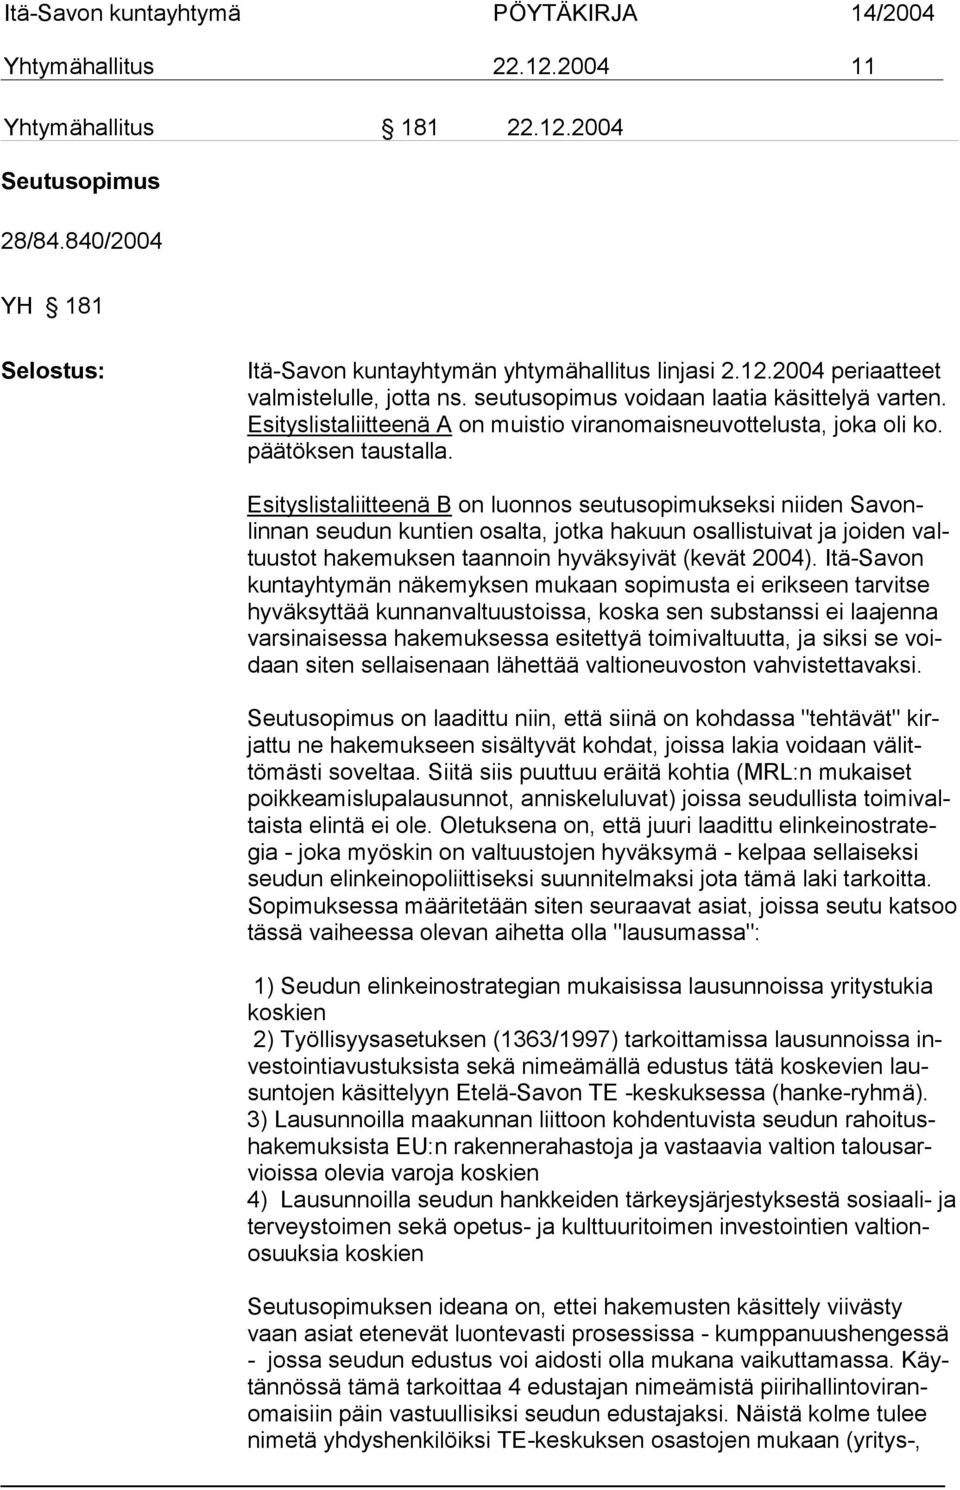 Esityslistaliitteenä B on luonnos seutusopimukseksi niiden Savonlinnan seu dun kun tien osalta, jotka hakuun osallistuivat ja joiden valtuustot hakemuksen taannoin hyväksyivät (kevät 2004).